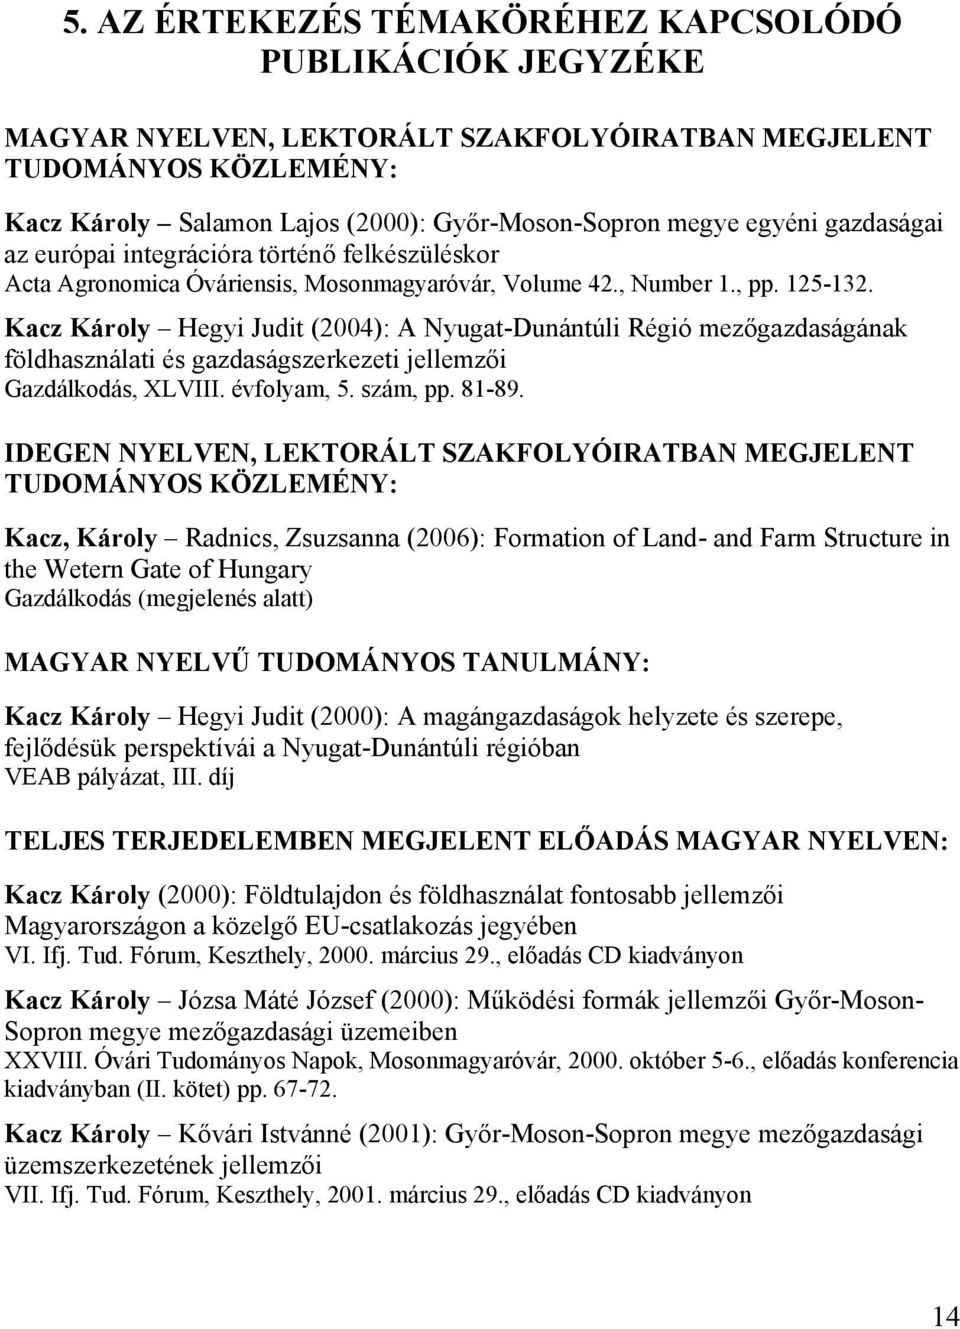 Kacz Károly Hegyi Judit (2004): A Nyugat-Dunántúli Régió mezőgazdaságának földhasználati és gazdaságszerkezeti jellemzői Gazdálkodás, XLVIII. évfolyam, 5. szám, pp. 81-89.